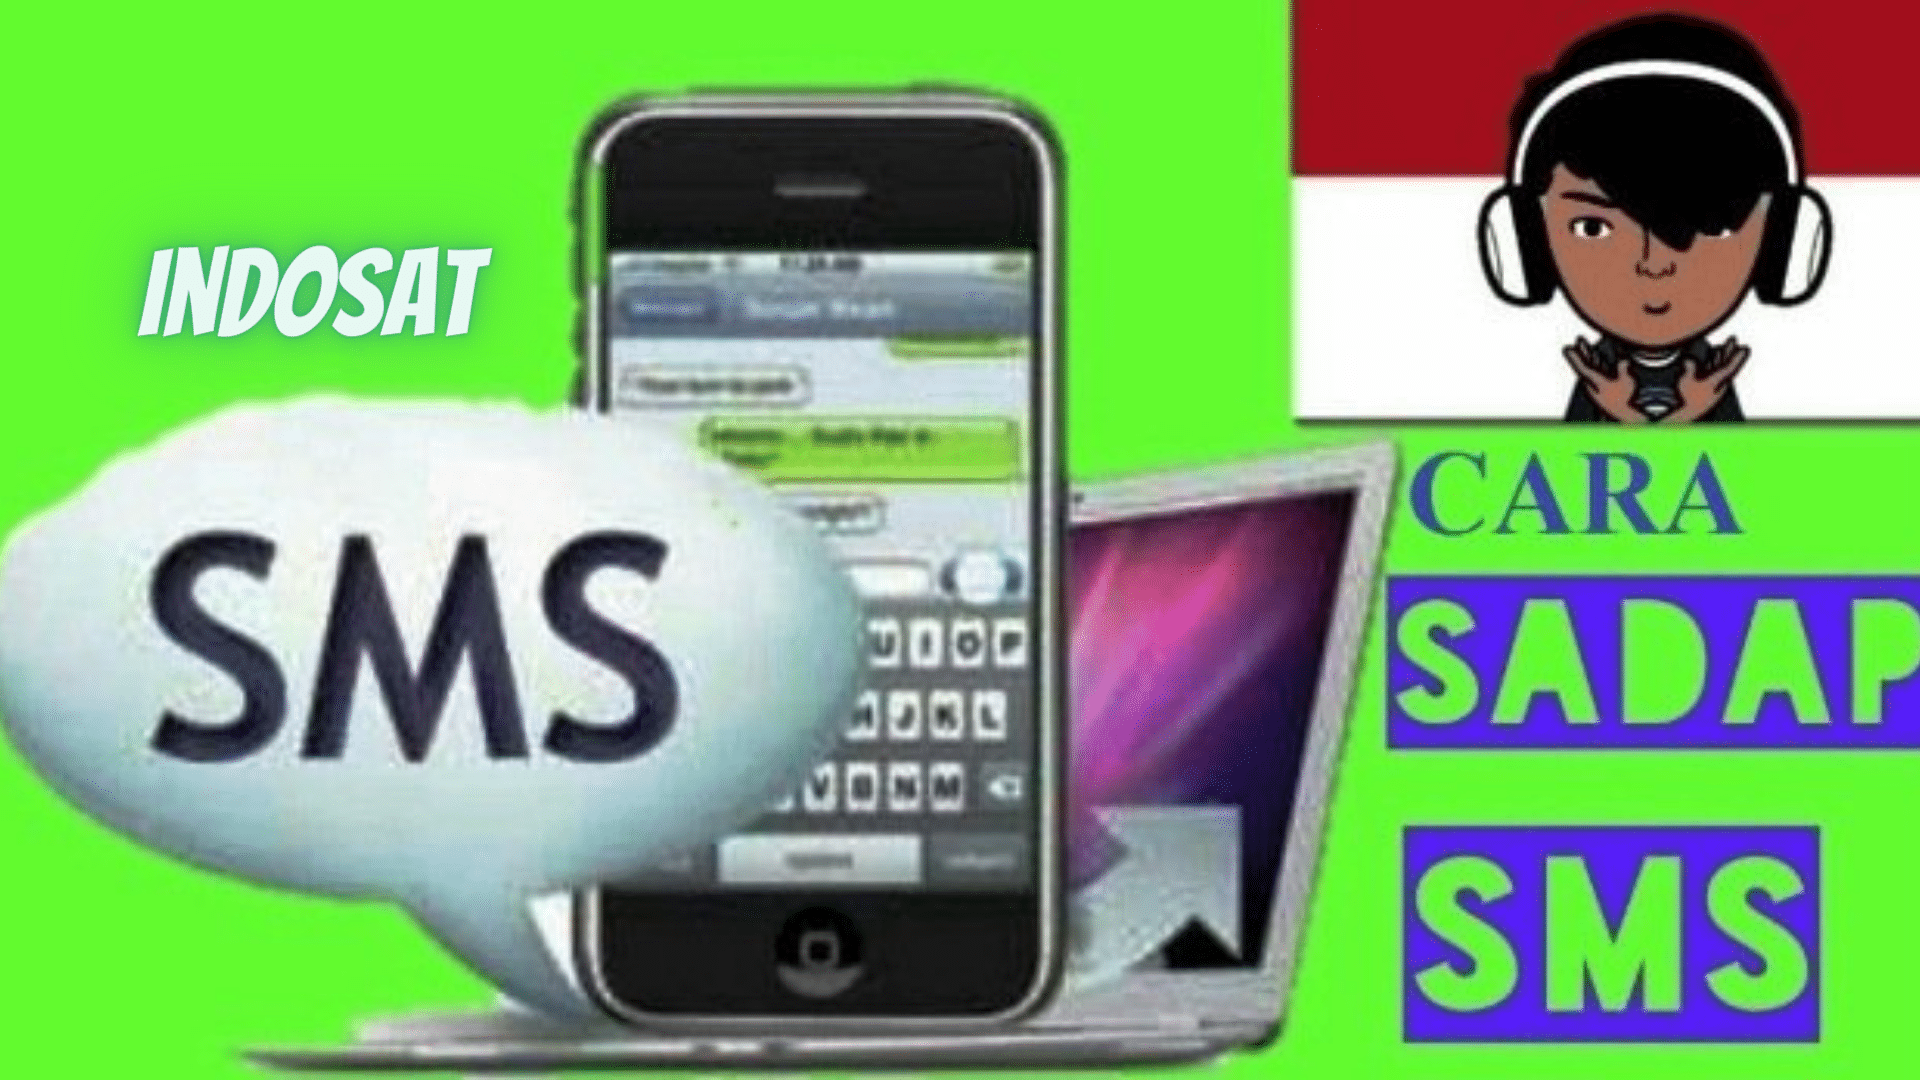 Cara Sadap SMS Di Kartu Indosat (1)